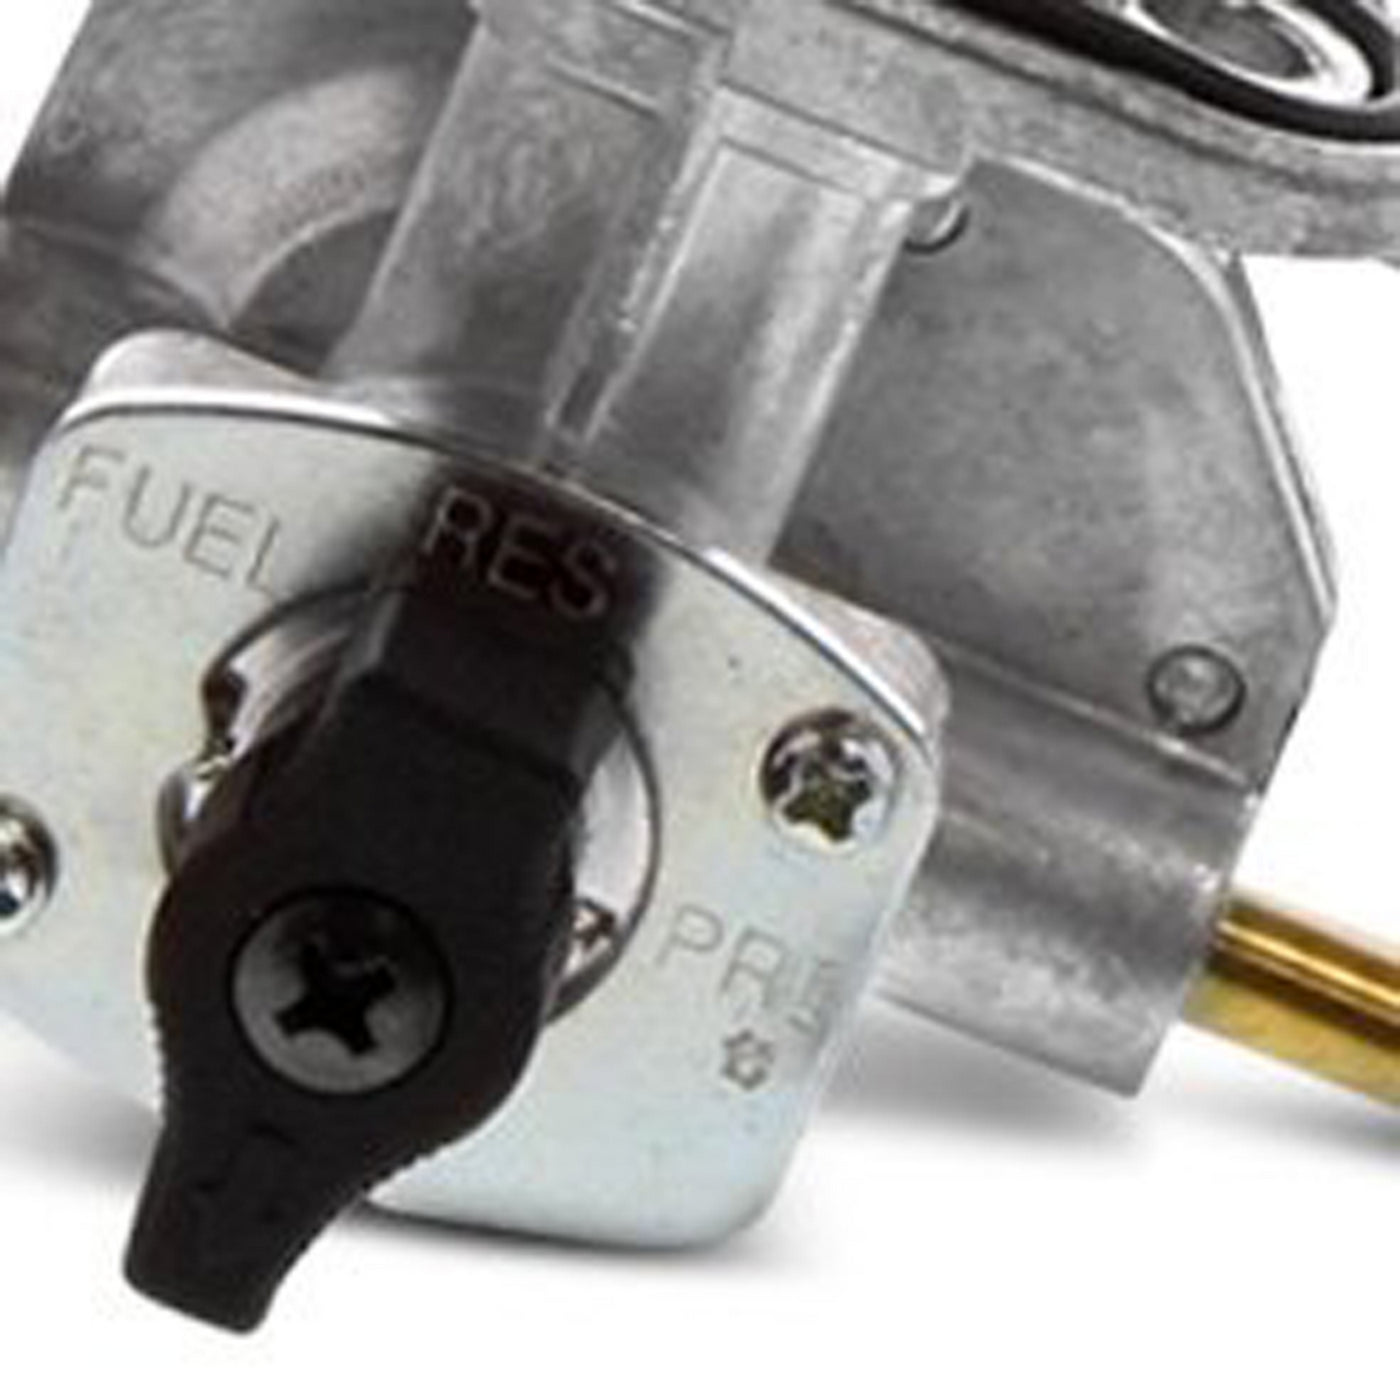 Fuel Star FS101-0116 Fuel Valve Kit #FS101-0116